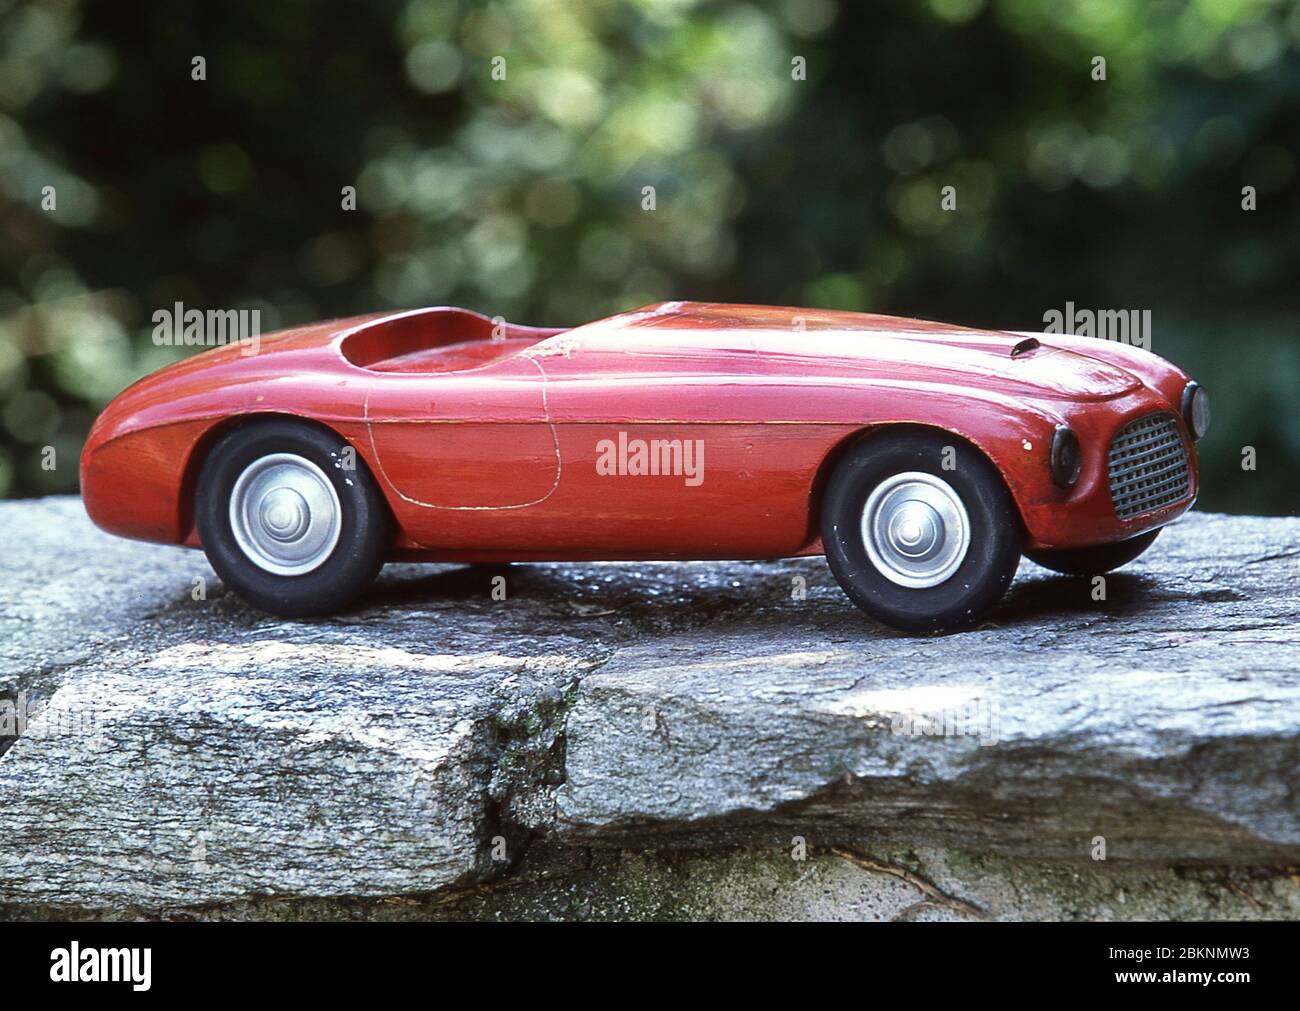 Carrozzeria Touring model of a 1948 model of the Ferrari 166 MM Barchetta  2002 Stock Photo